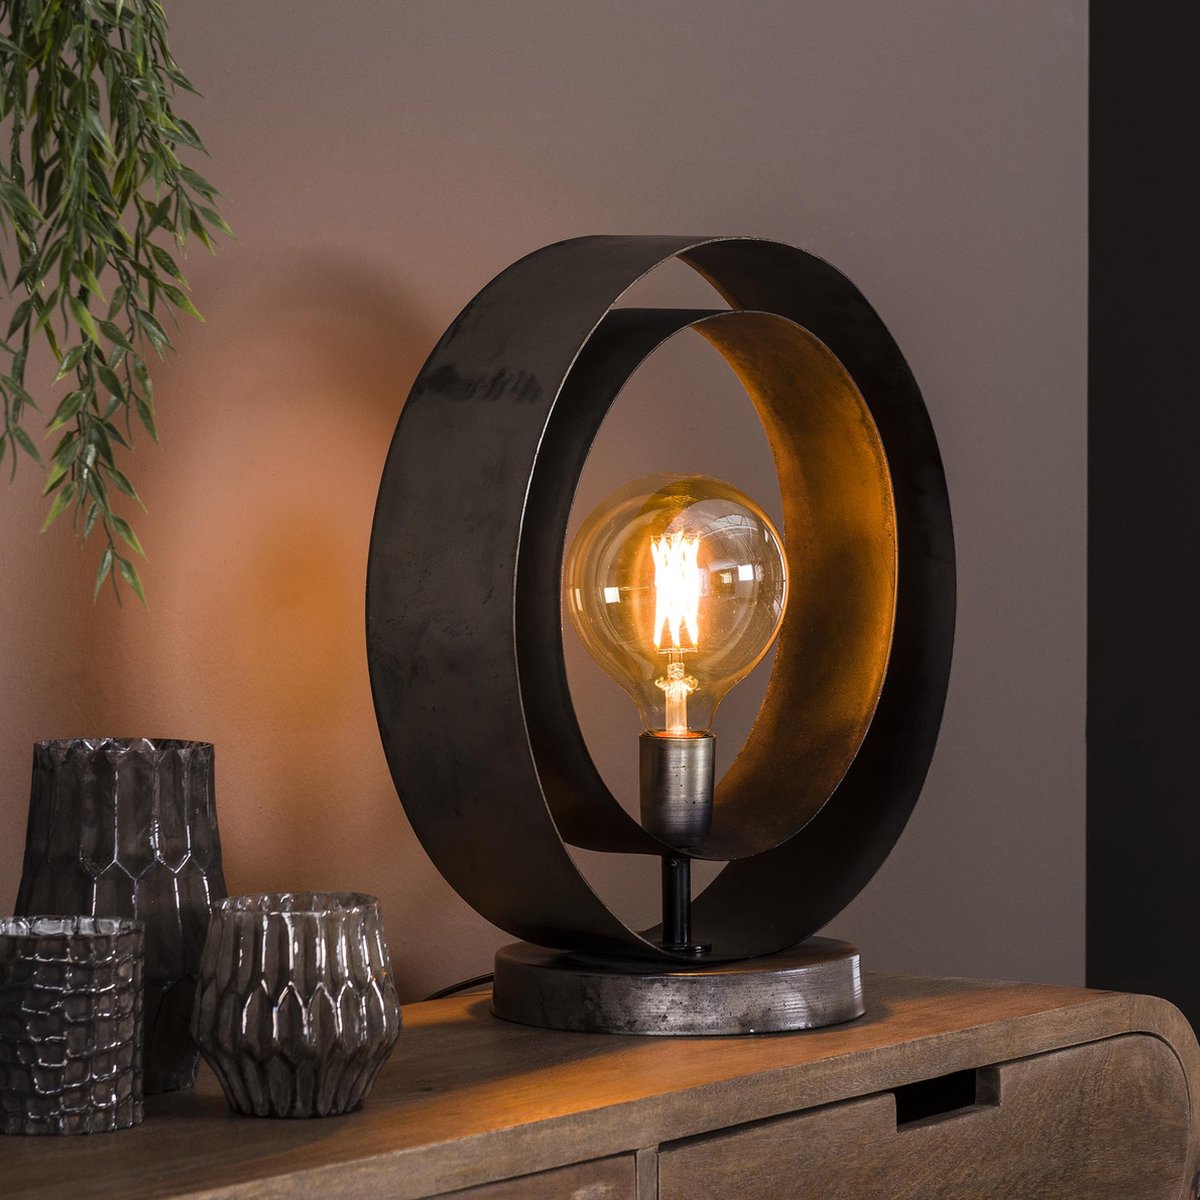 Tafellamp Rotar | 1 lichts | oud zilver / grijs / zwart | metaal | ⌀ 40 cm | hal / bureaulamp | modern / sfeervol design